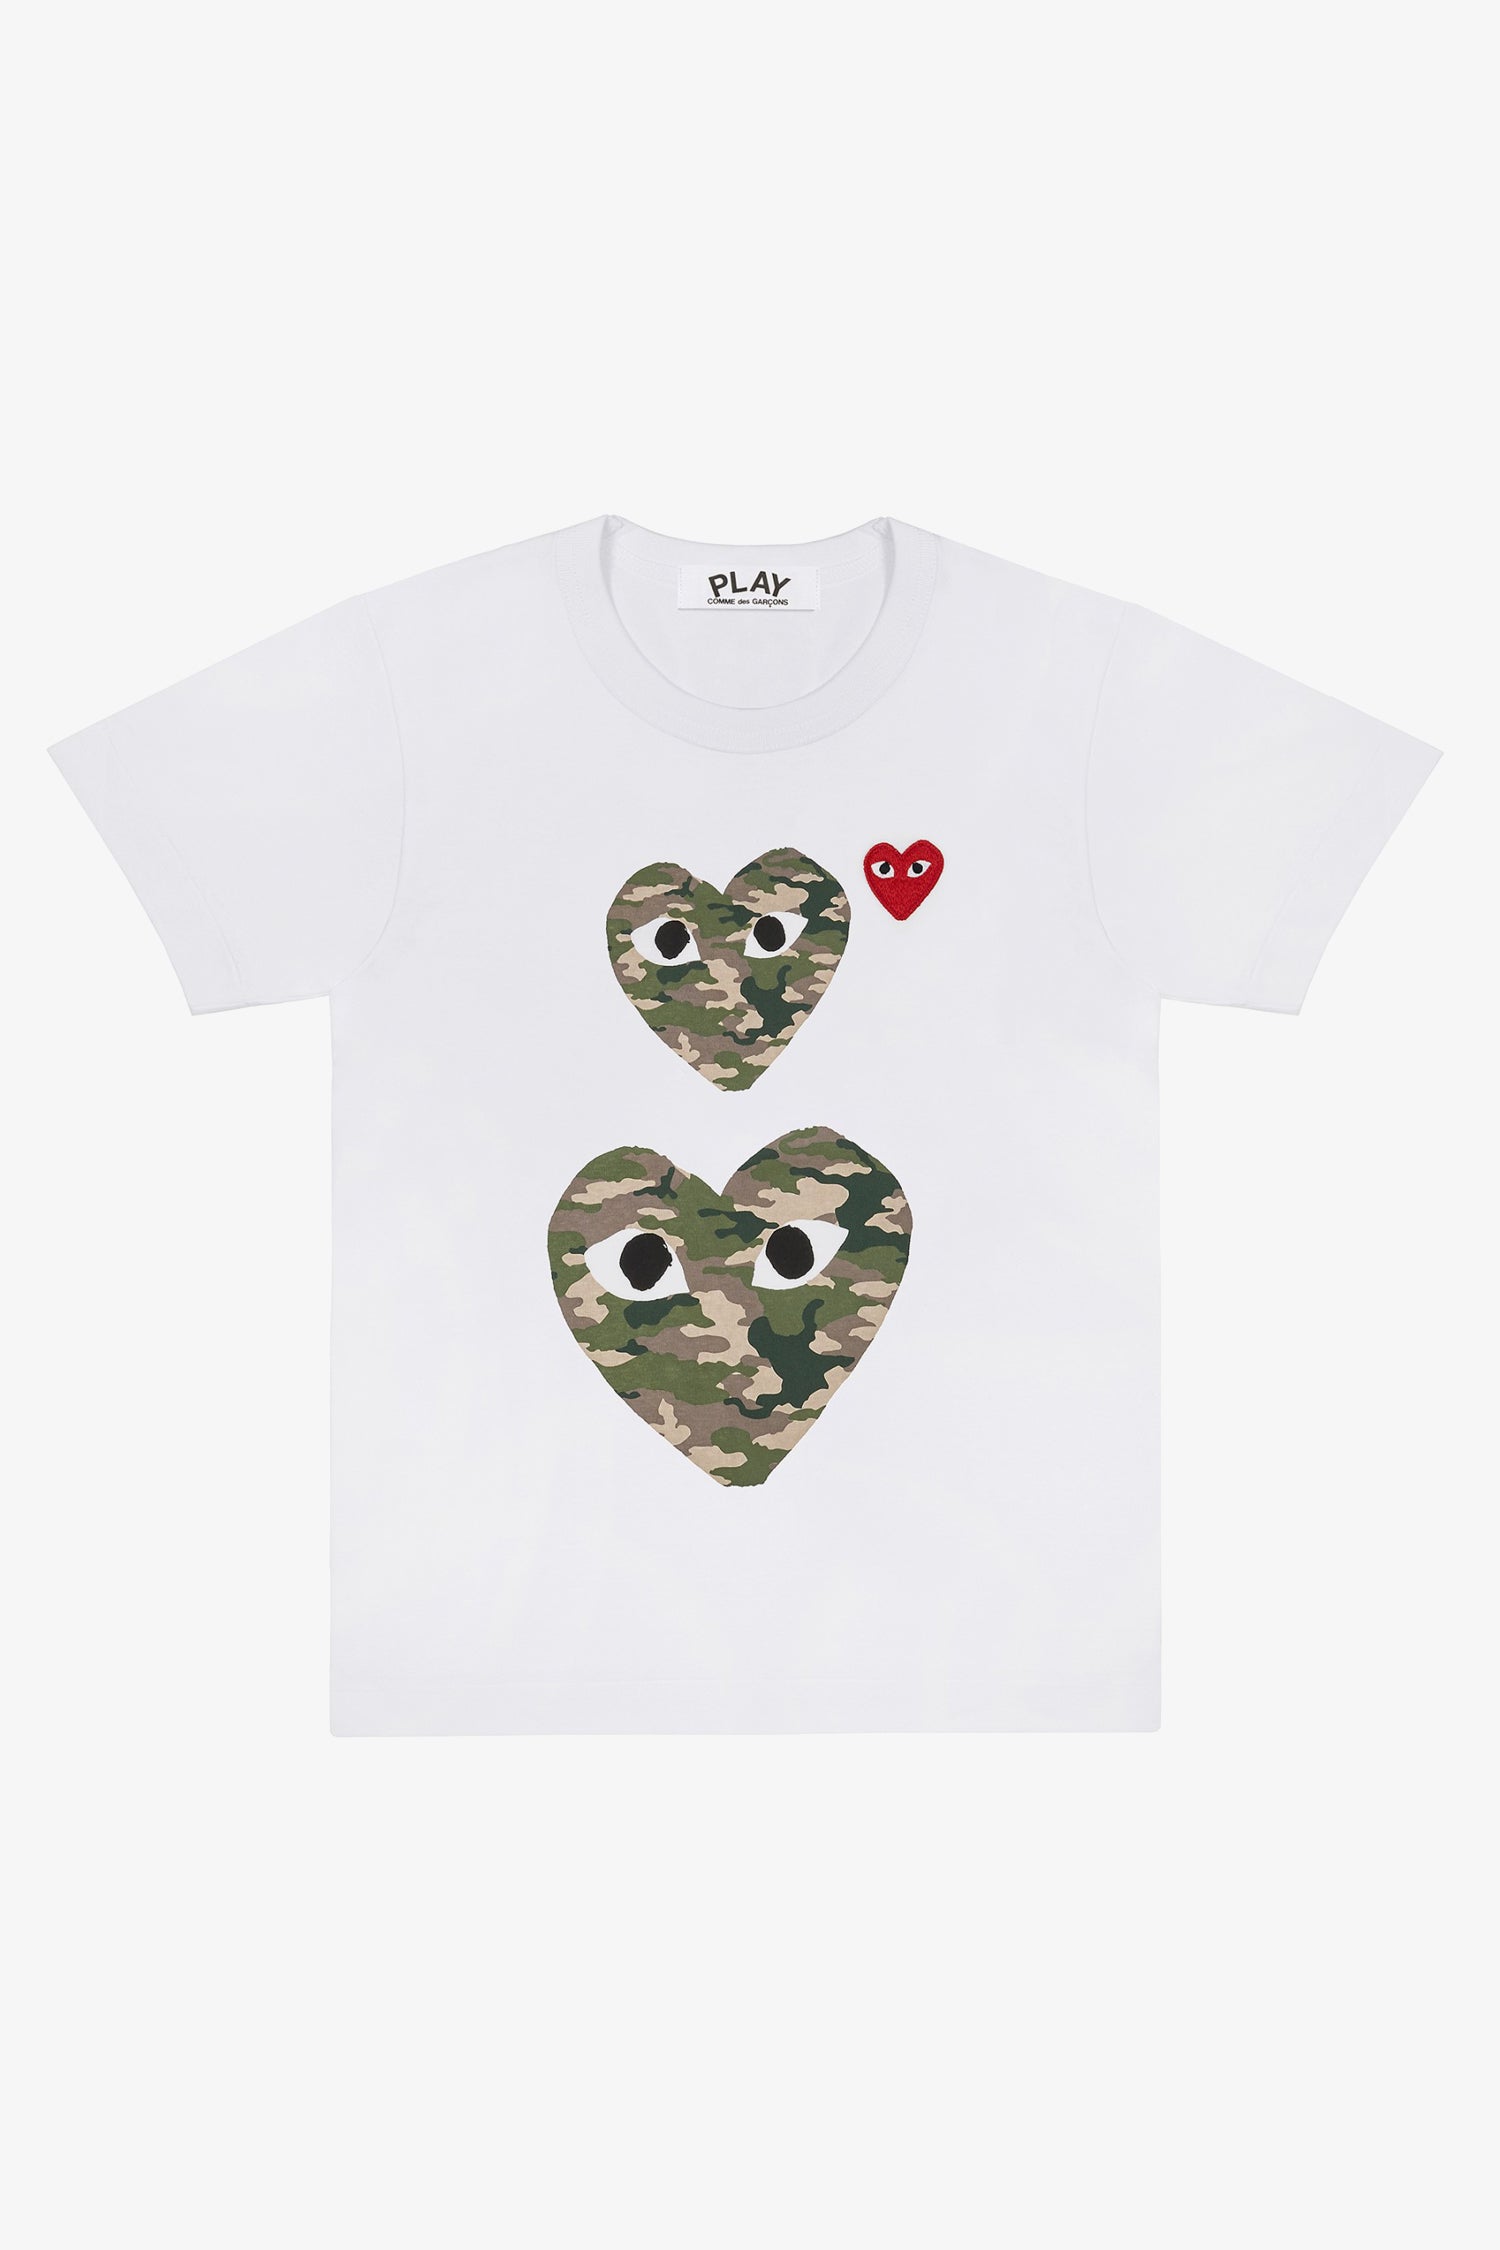 Selectshop FRAME - COMME DES GARCONS PLAY Camouflage Double Heart T-Shirt T-Shirt Dubai